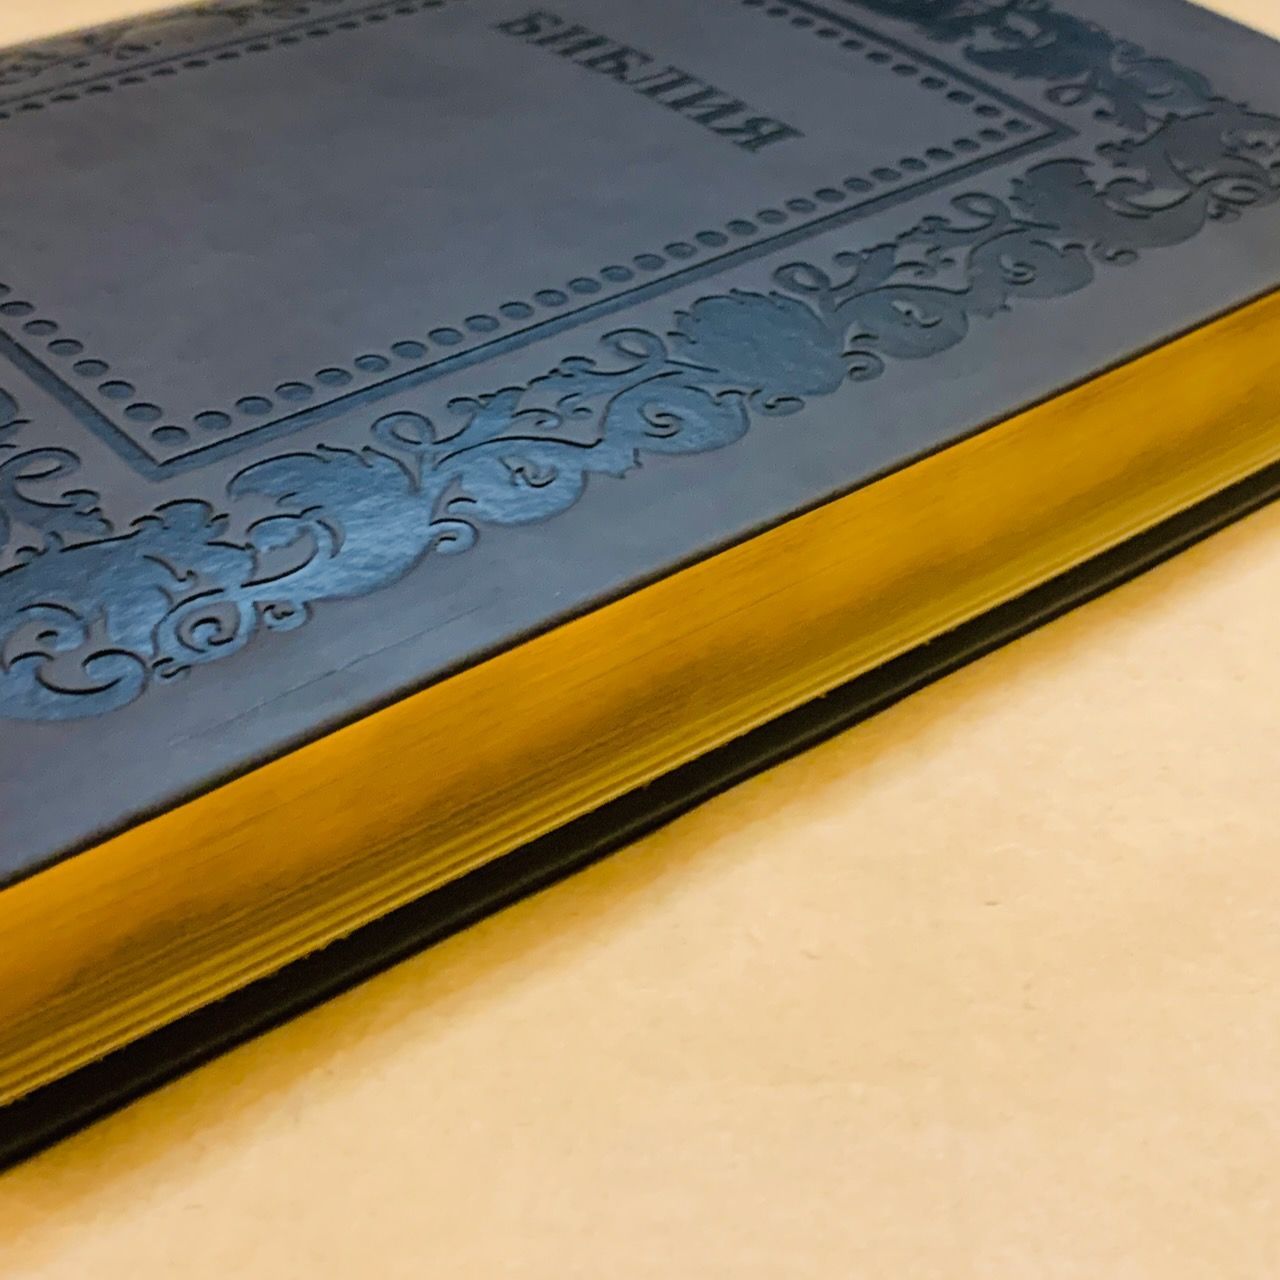 Библия 076 код H1,  дизайн "термо рамка барокко", переплет из искусственной кожи, цвет темно-серый матовый